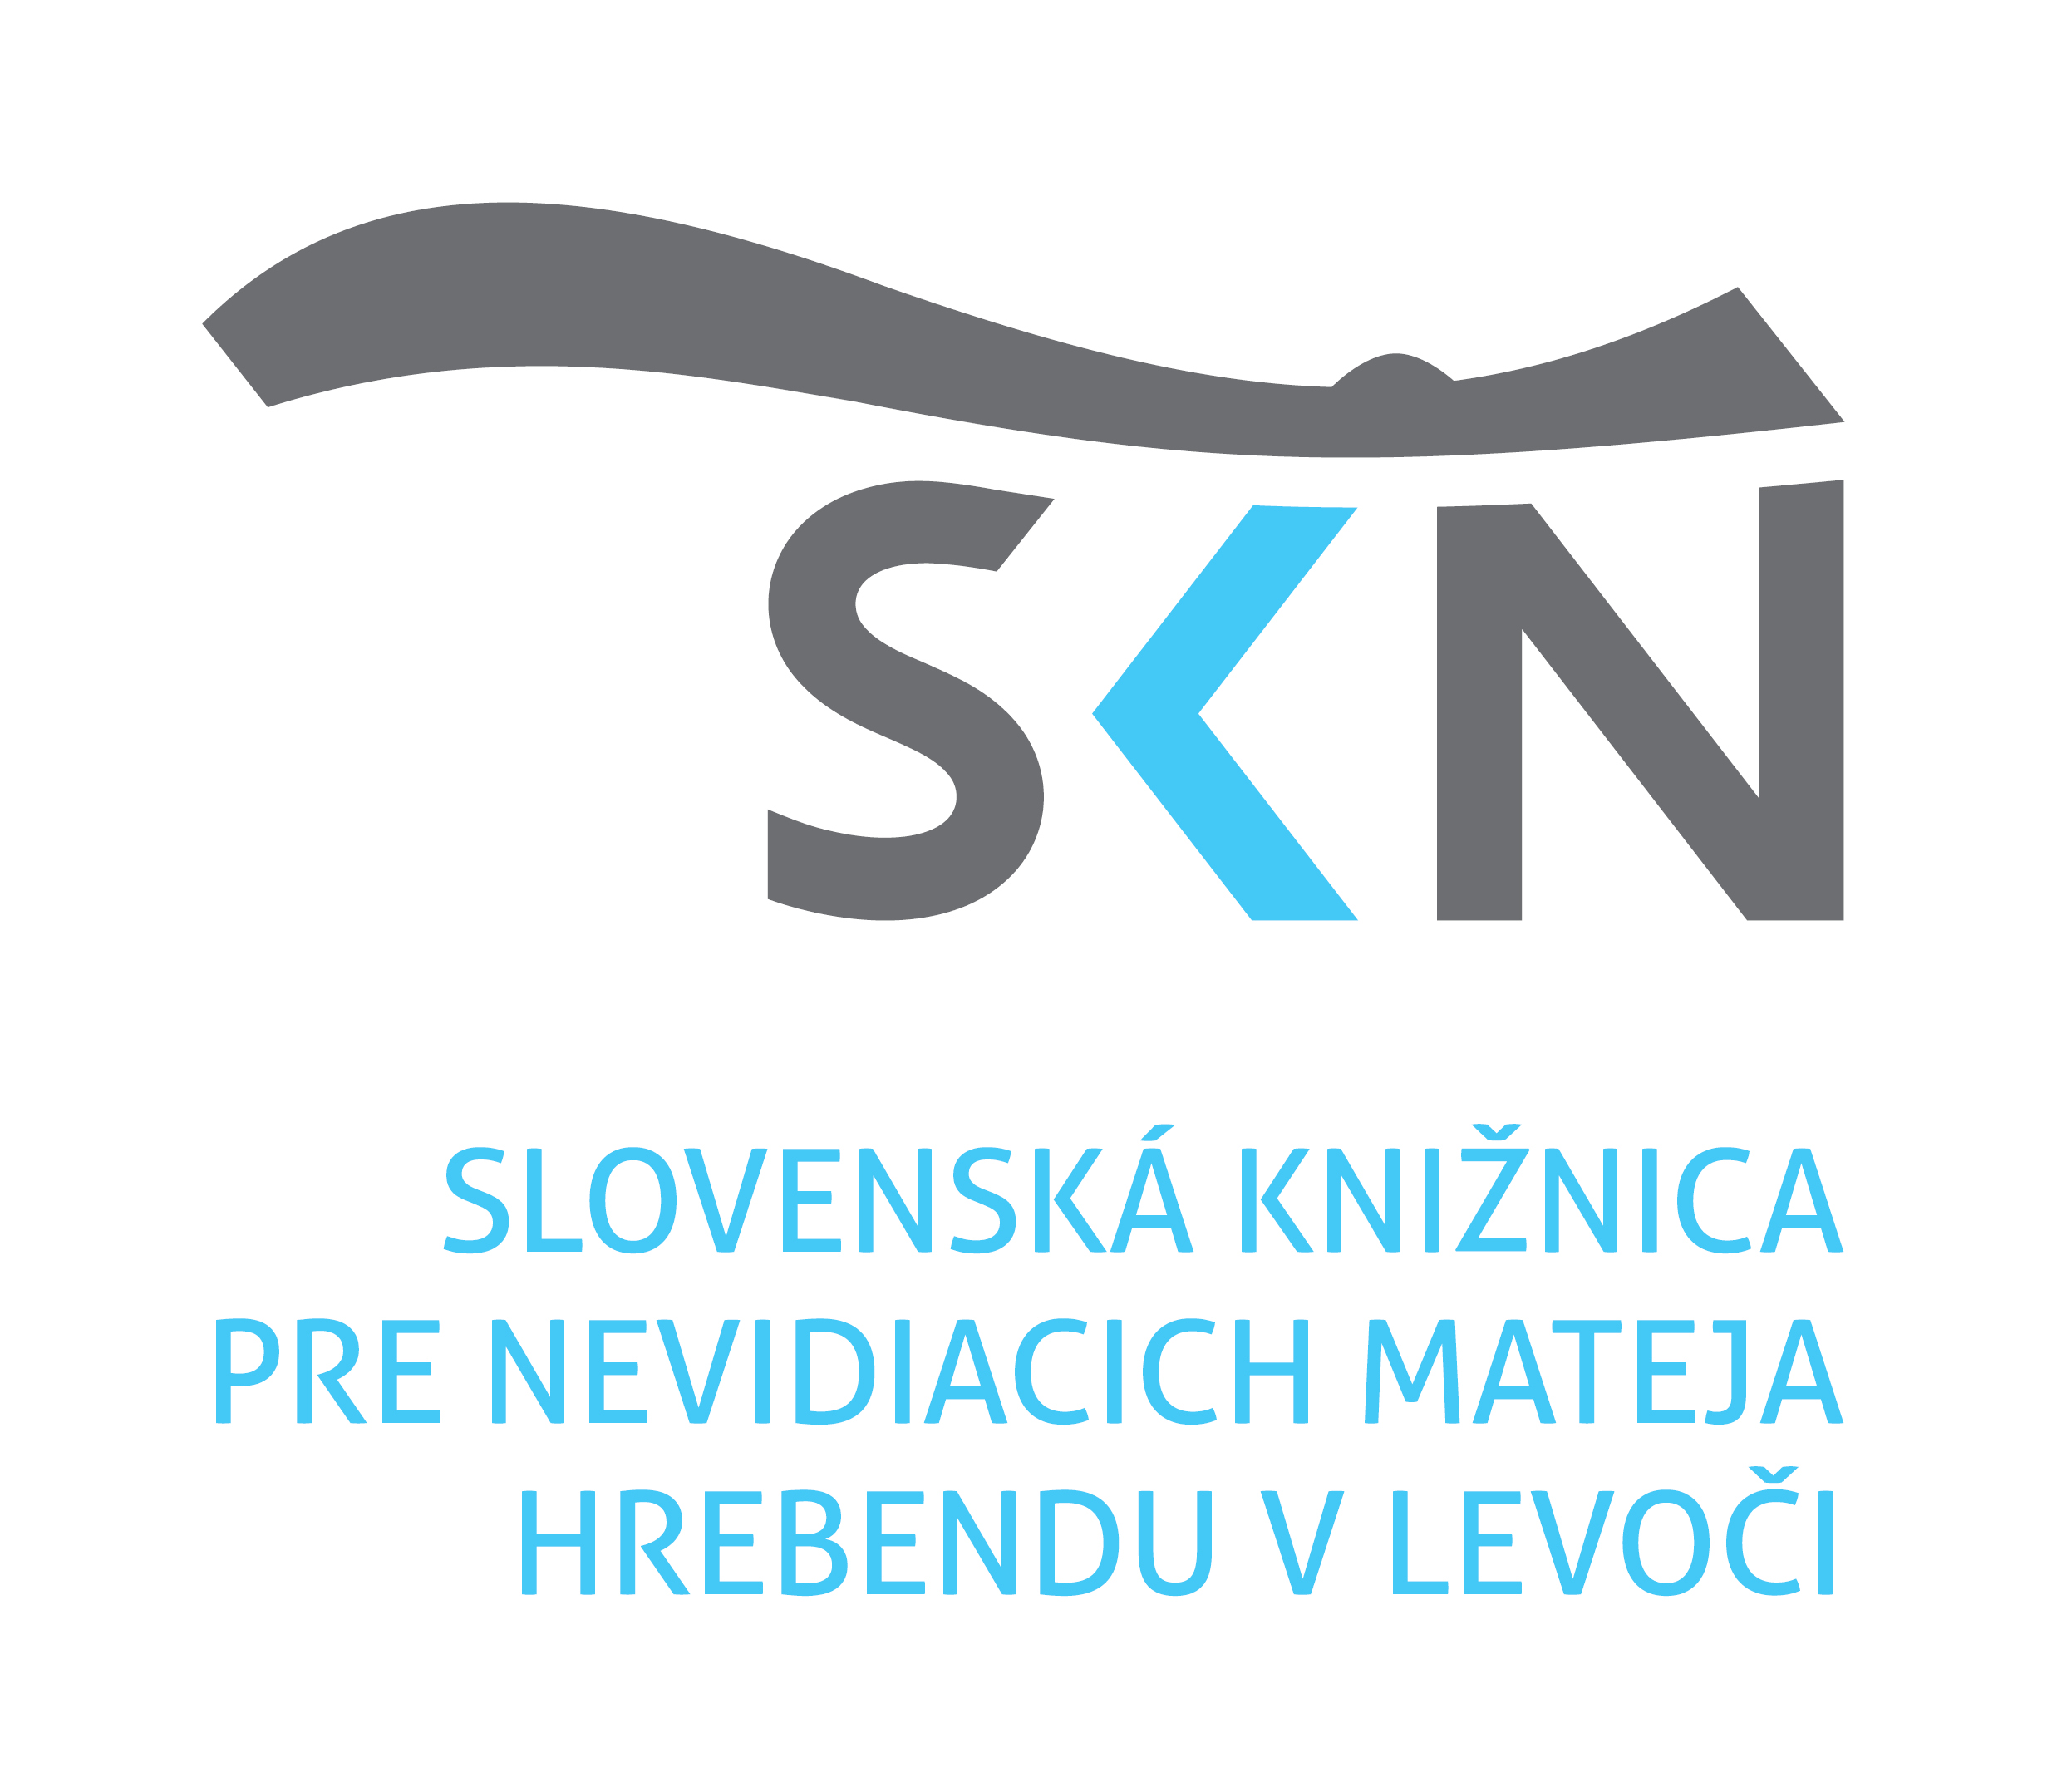 Slovenska kniznica pre nevidiacich v Levoci